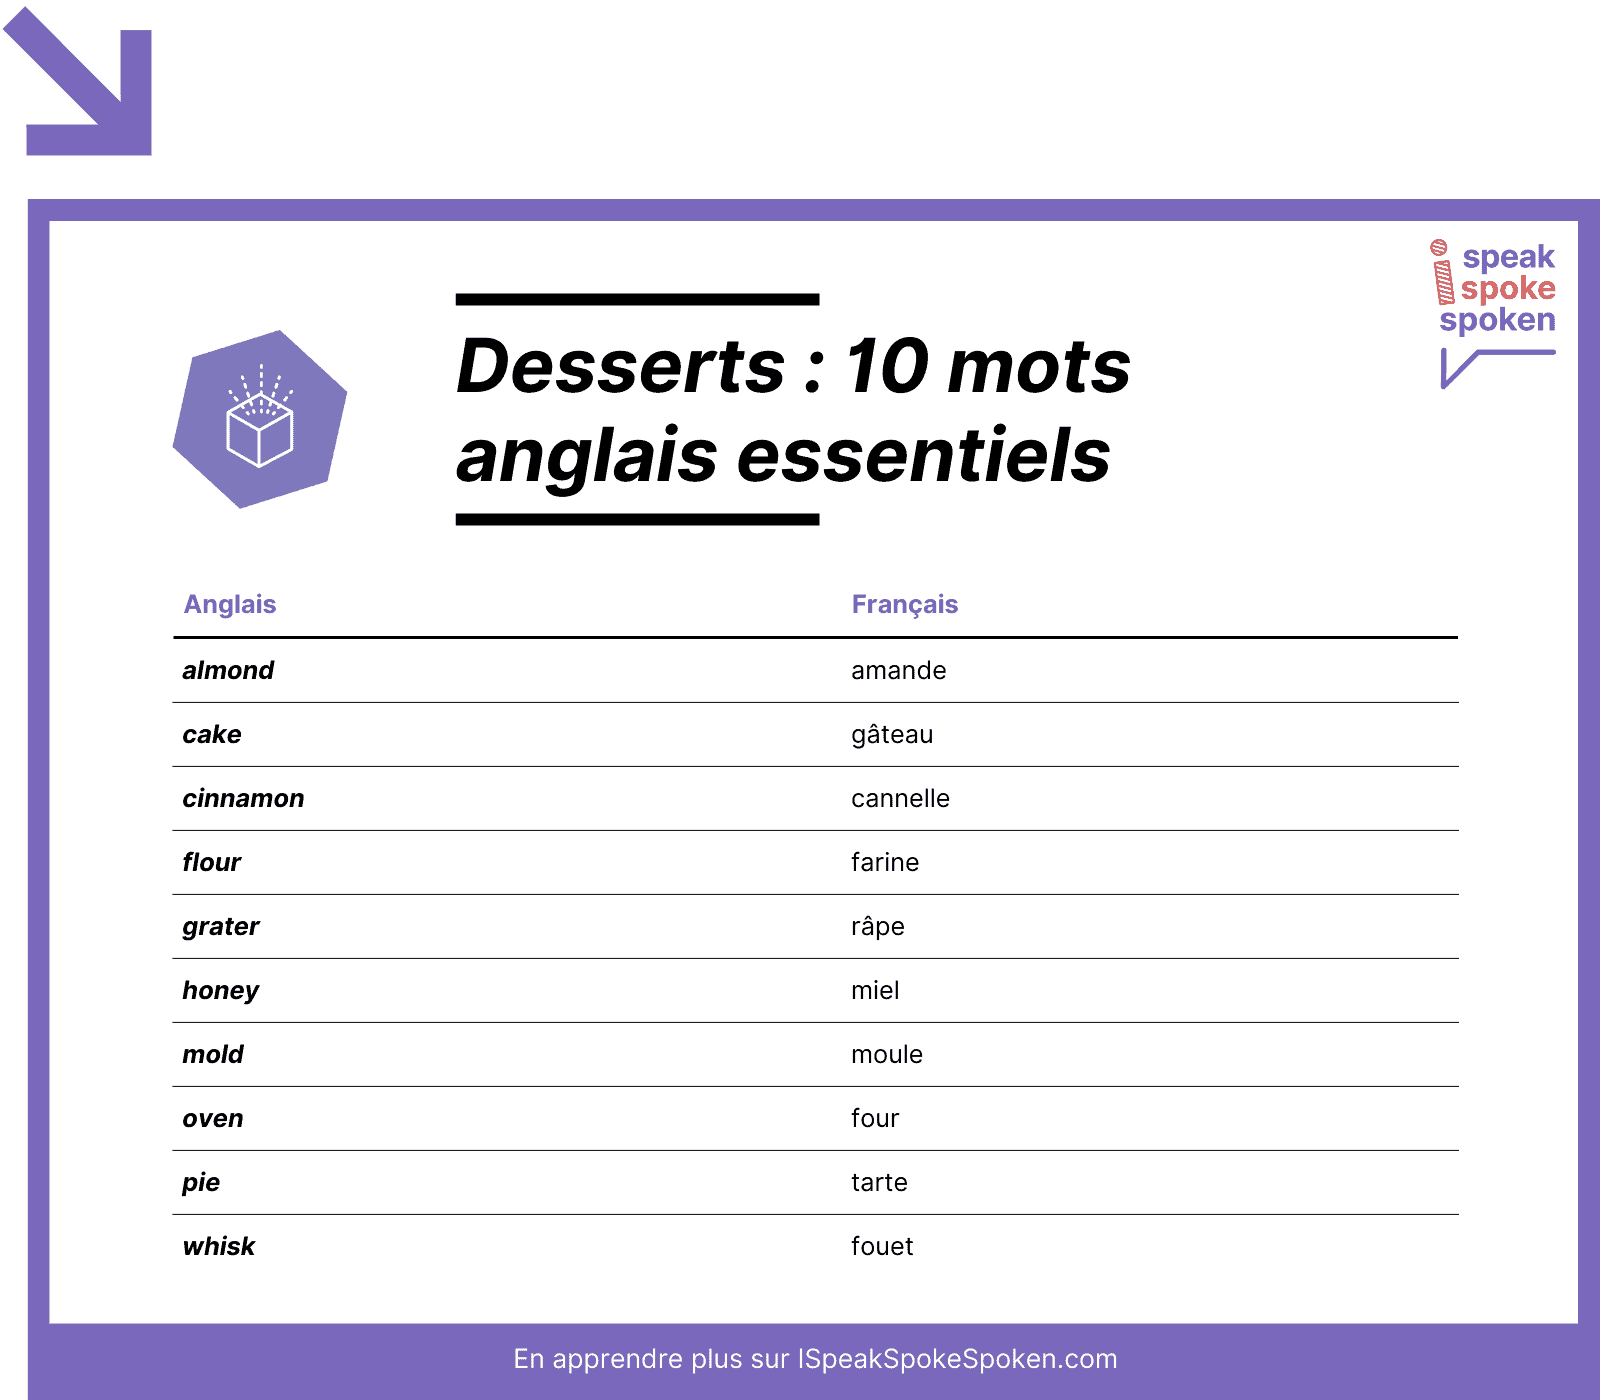 10 mots de vocabulaire anglais essentiels liés aux desserts